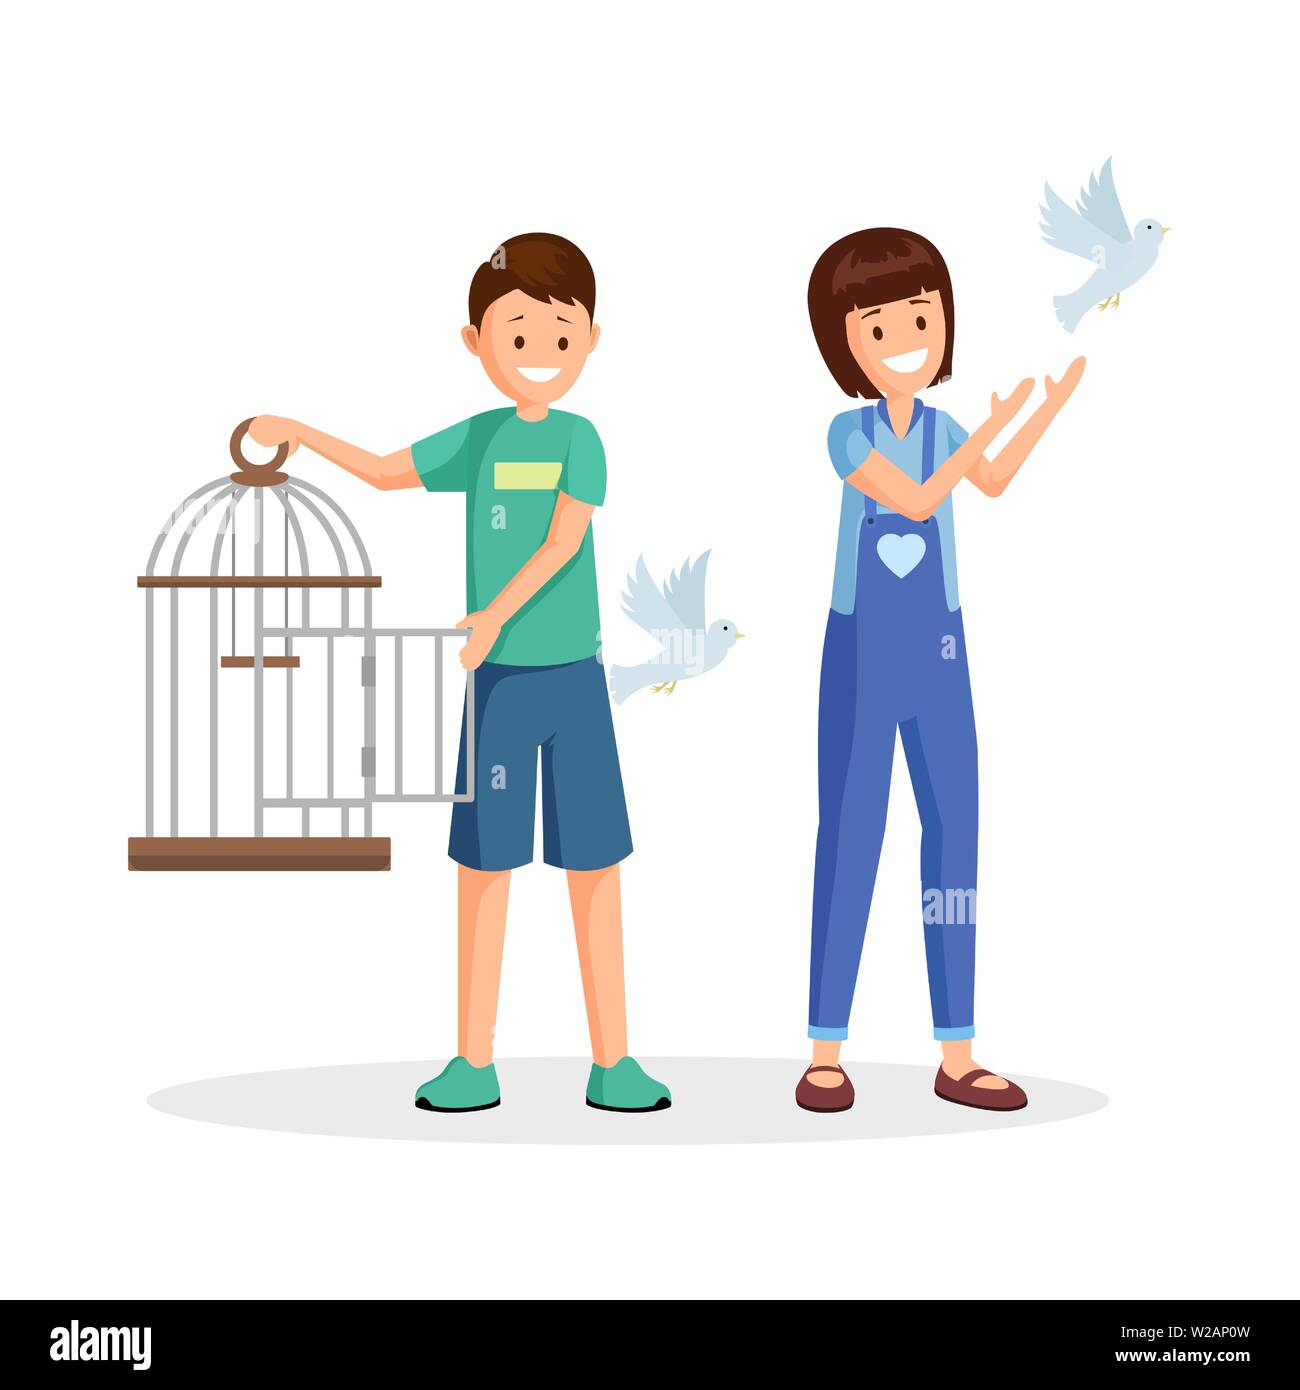 Kinder Einstellung Vögel Vector Illustration. Cartoon Kinder, Jugendliche mit offenen Vogelkäfig befreiende Tauben. Tierschützer, freiwillige Kämpfen für wild lebende Arten Lebensraum Stock Vektor